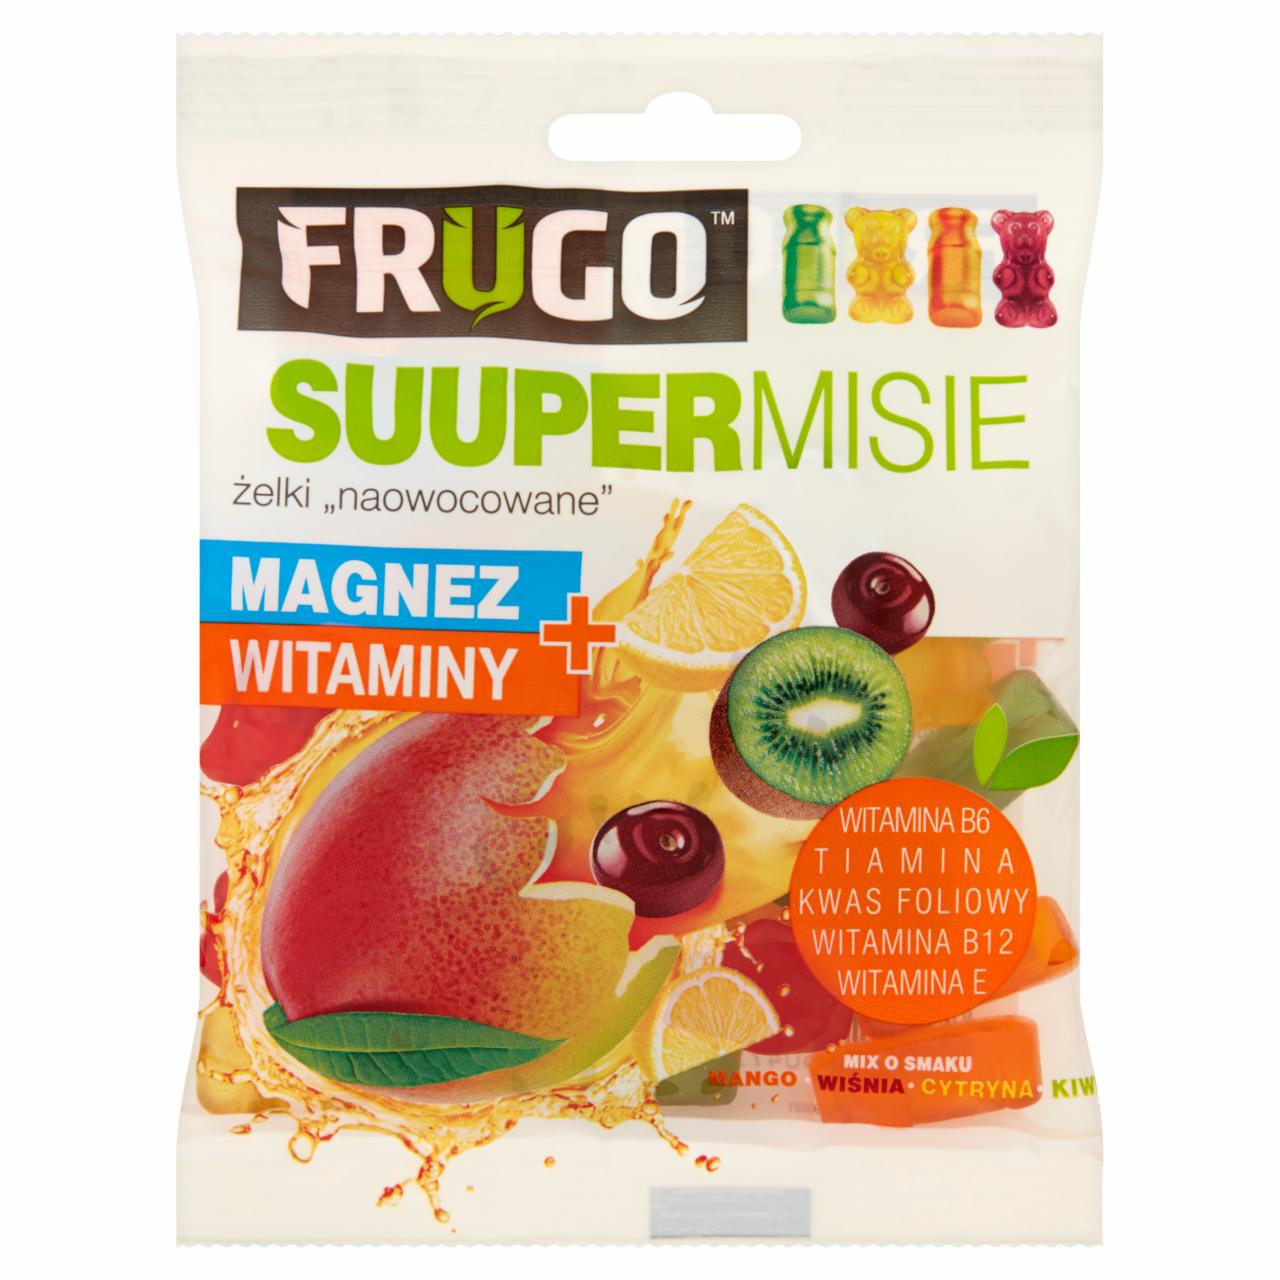 Zdjęcia - Frugo Suuper Misie Żelki naowocowane magnez + witaminy 90 g